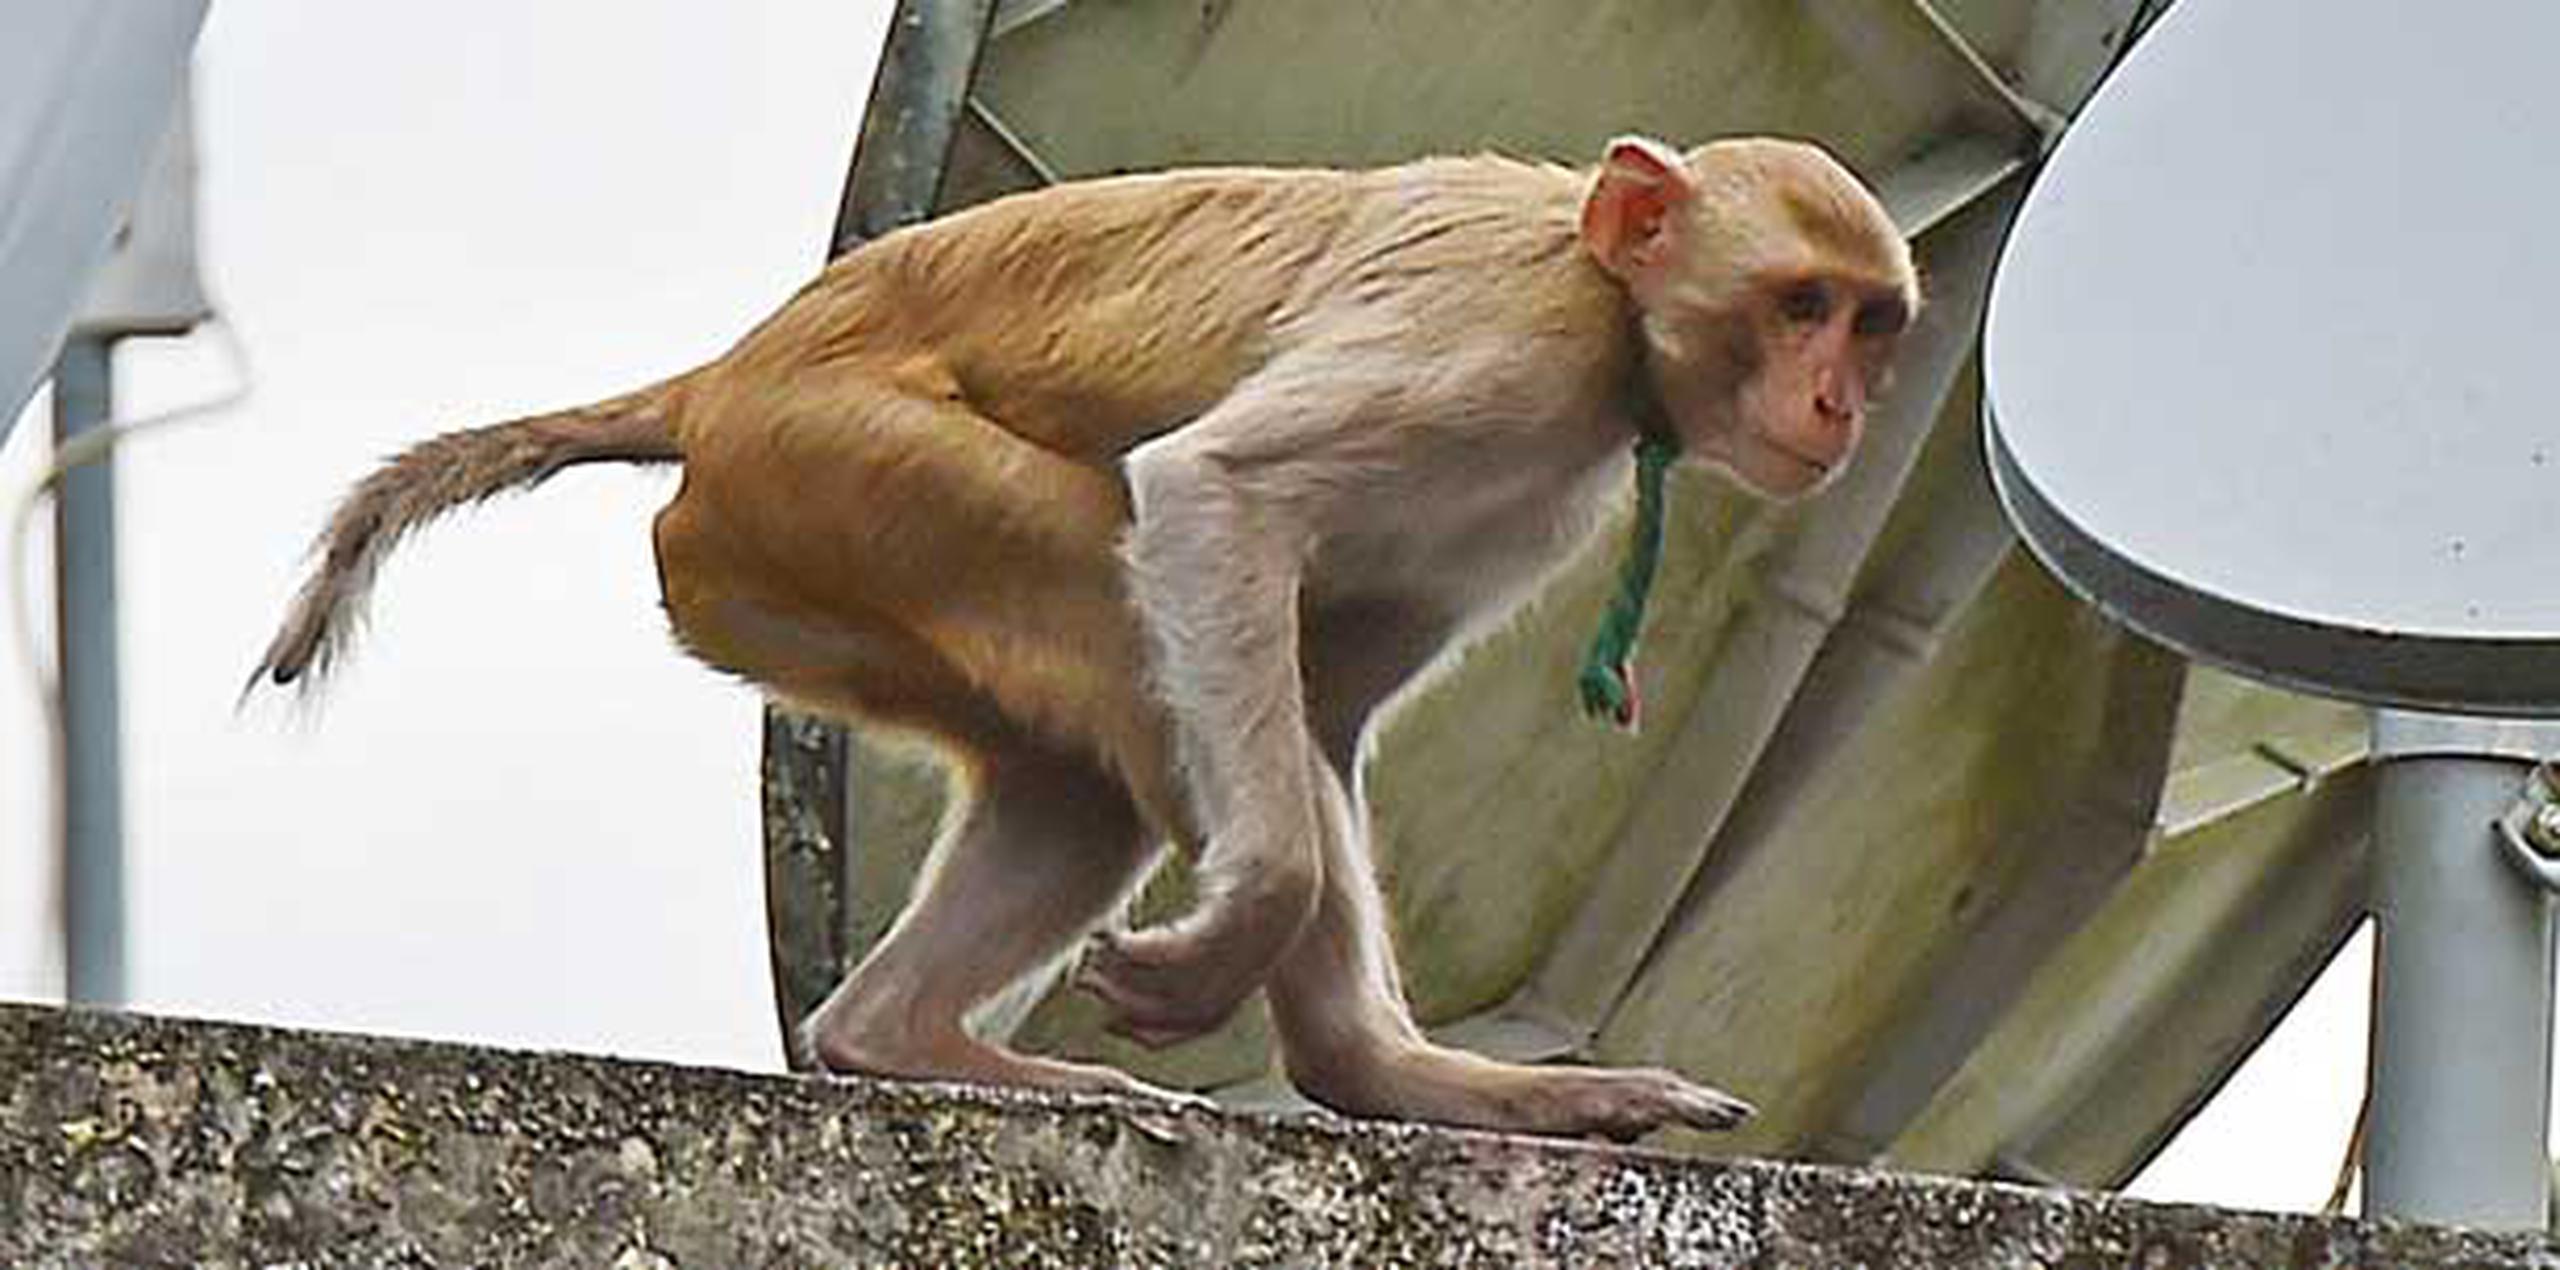 Según vecinos, parece que el mono esté domesticado ya que por las noches toca las ventanas de las casas, como pidiendo que lo dejen entrar. (luis.alcaladelolmo@gfrmedia.com)